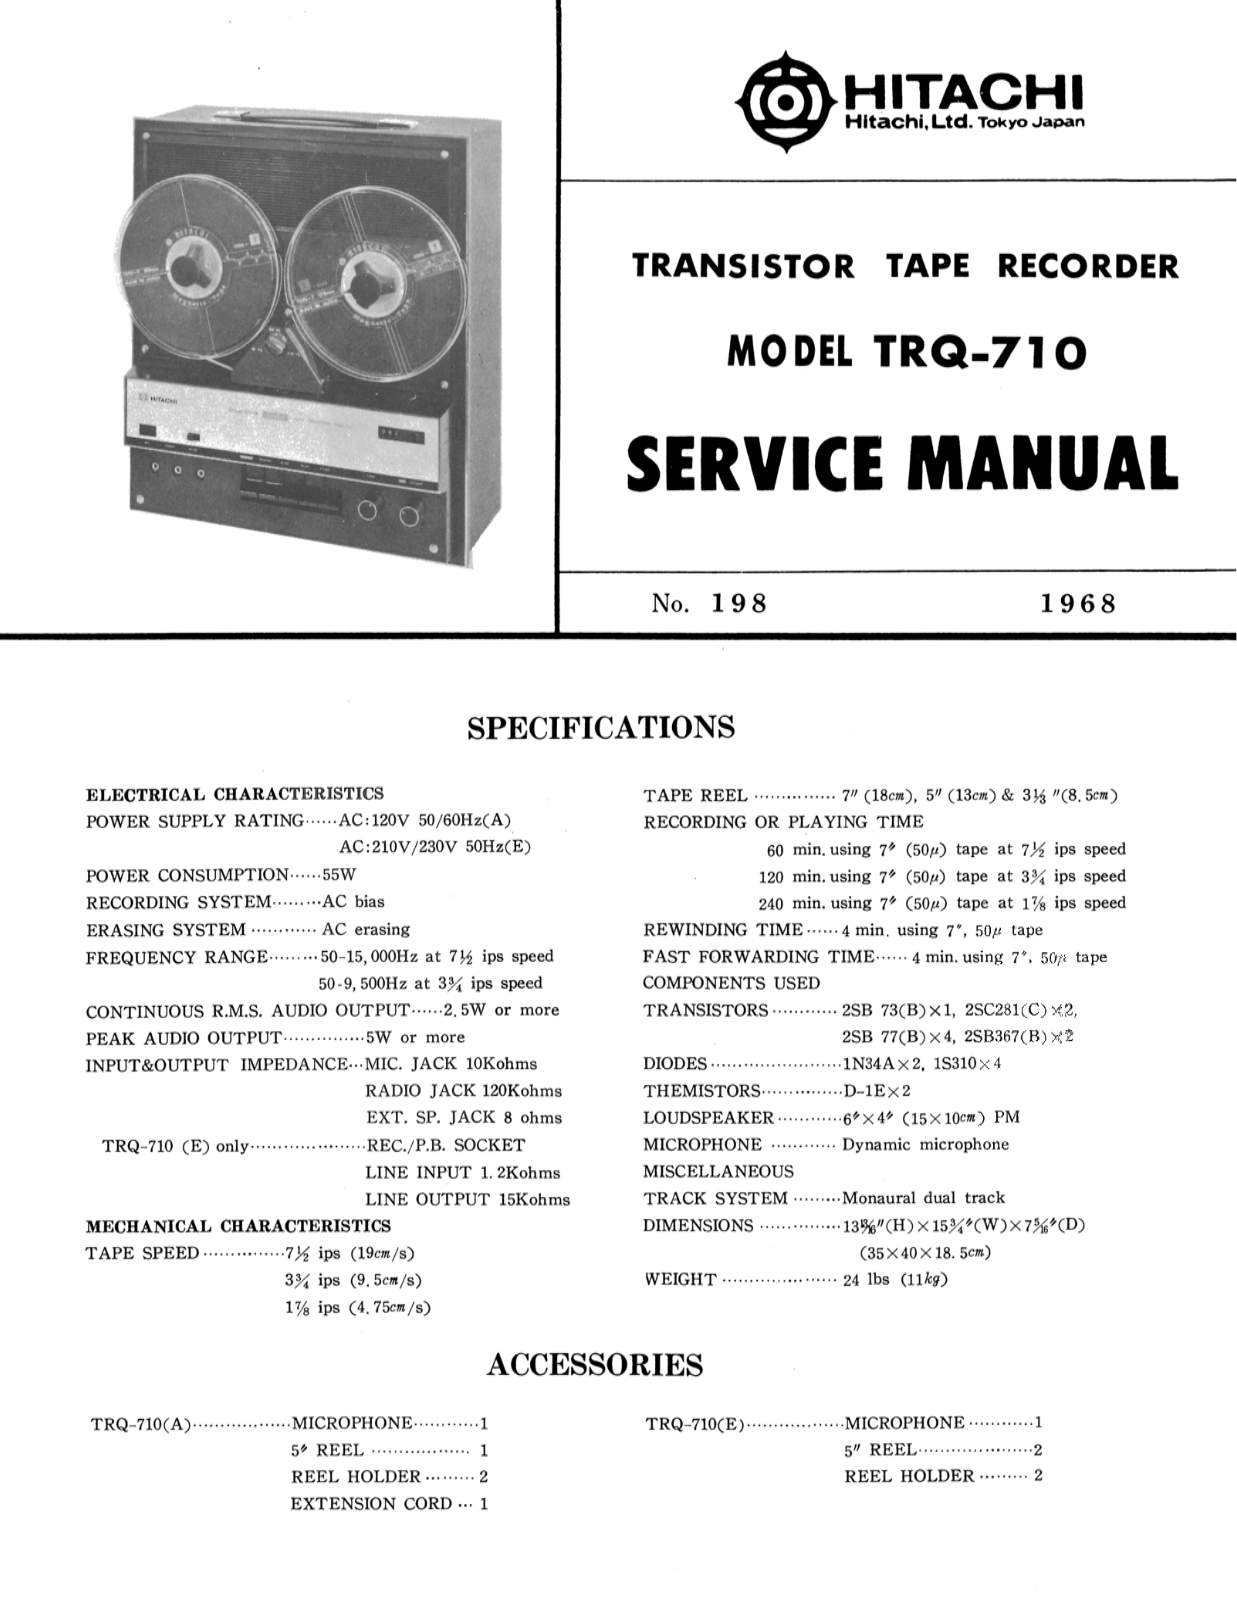 Hitachi TRQ-710 Service Manual